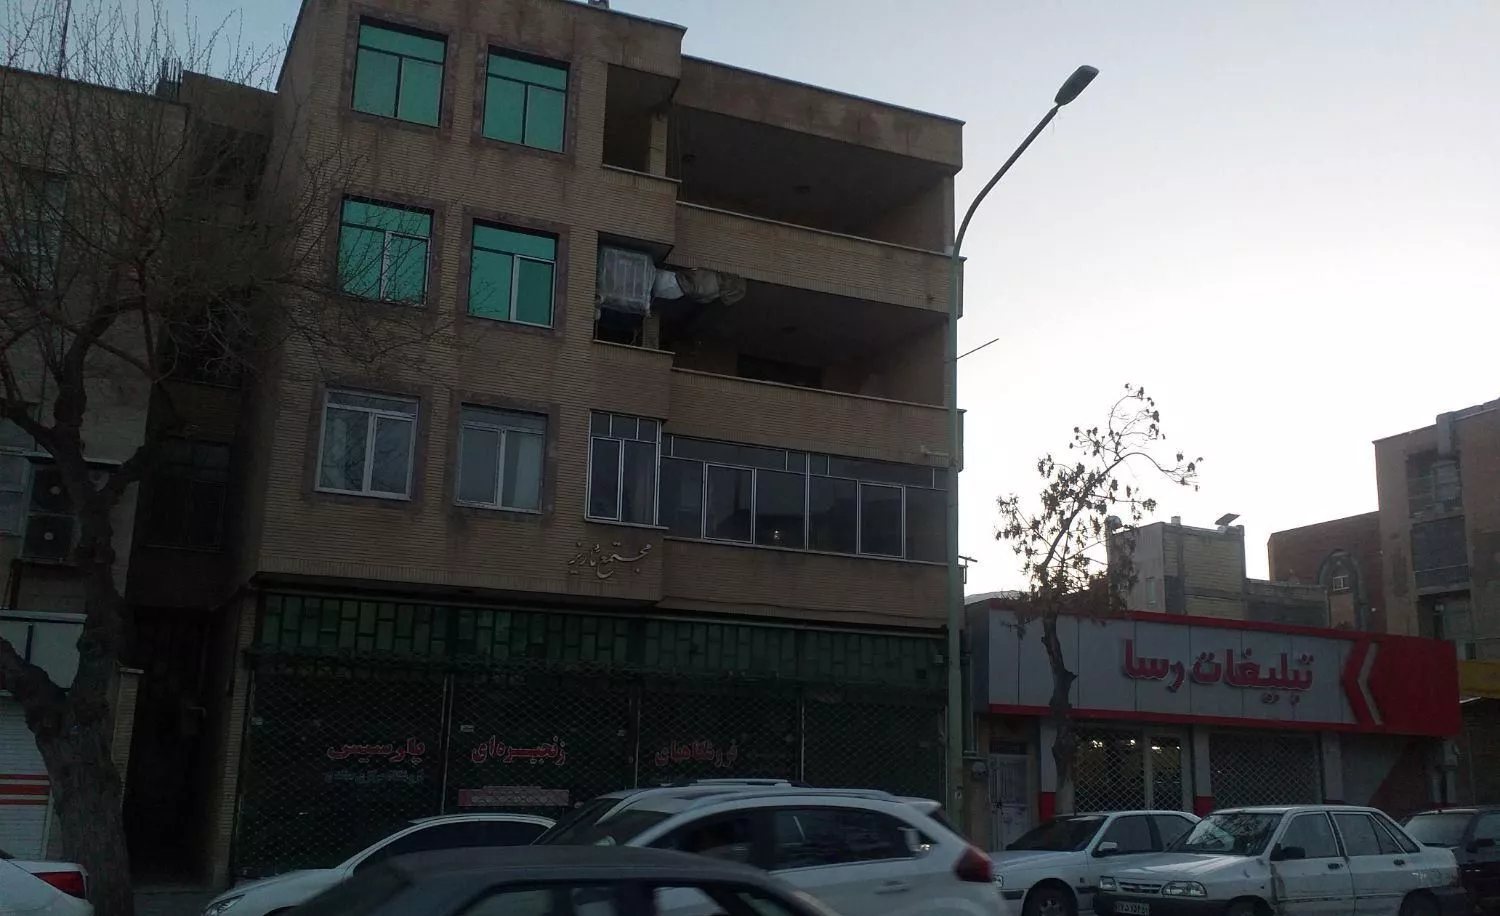 اپارتمان واقع در بر خیابان استانداری